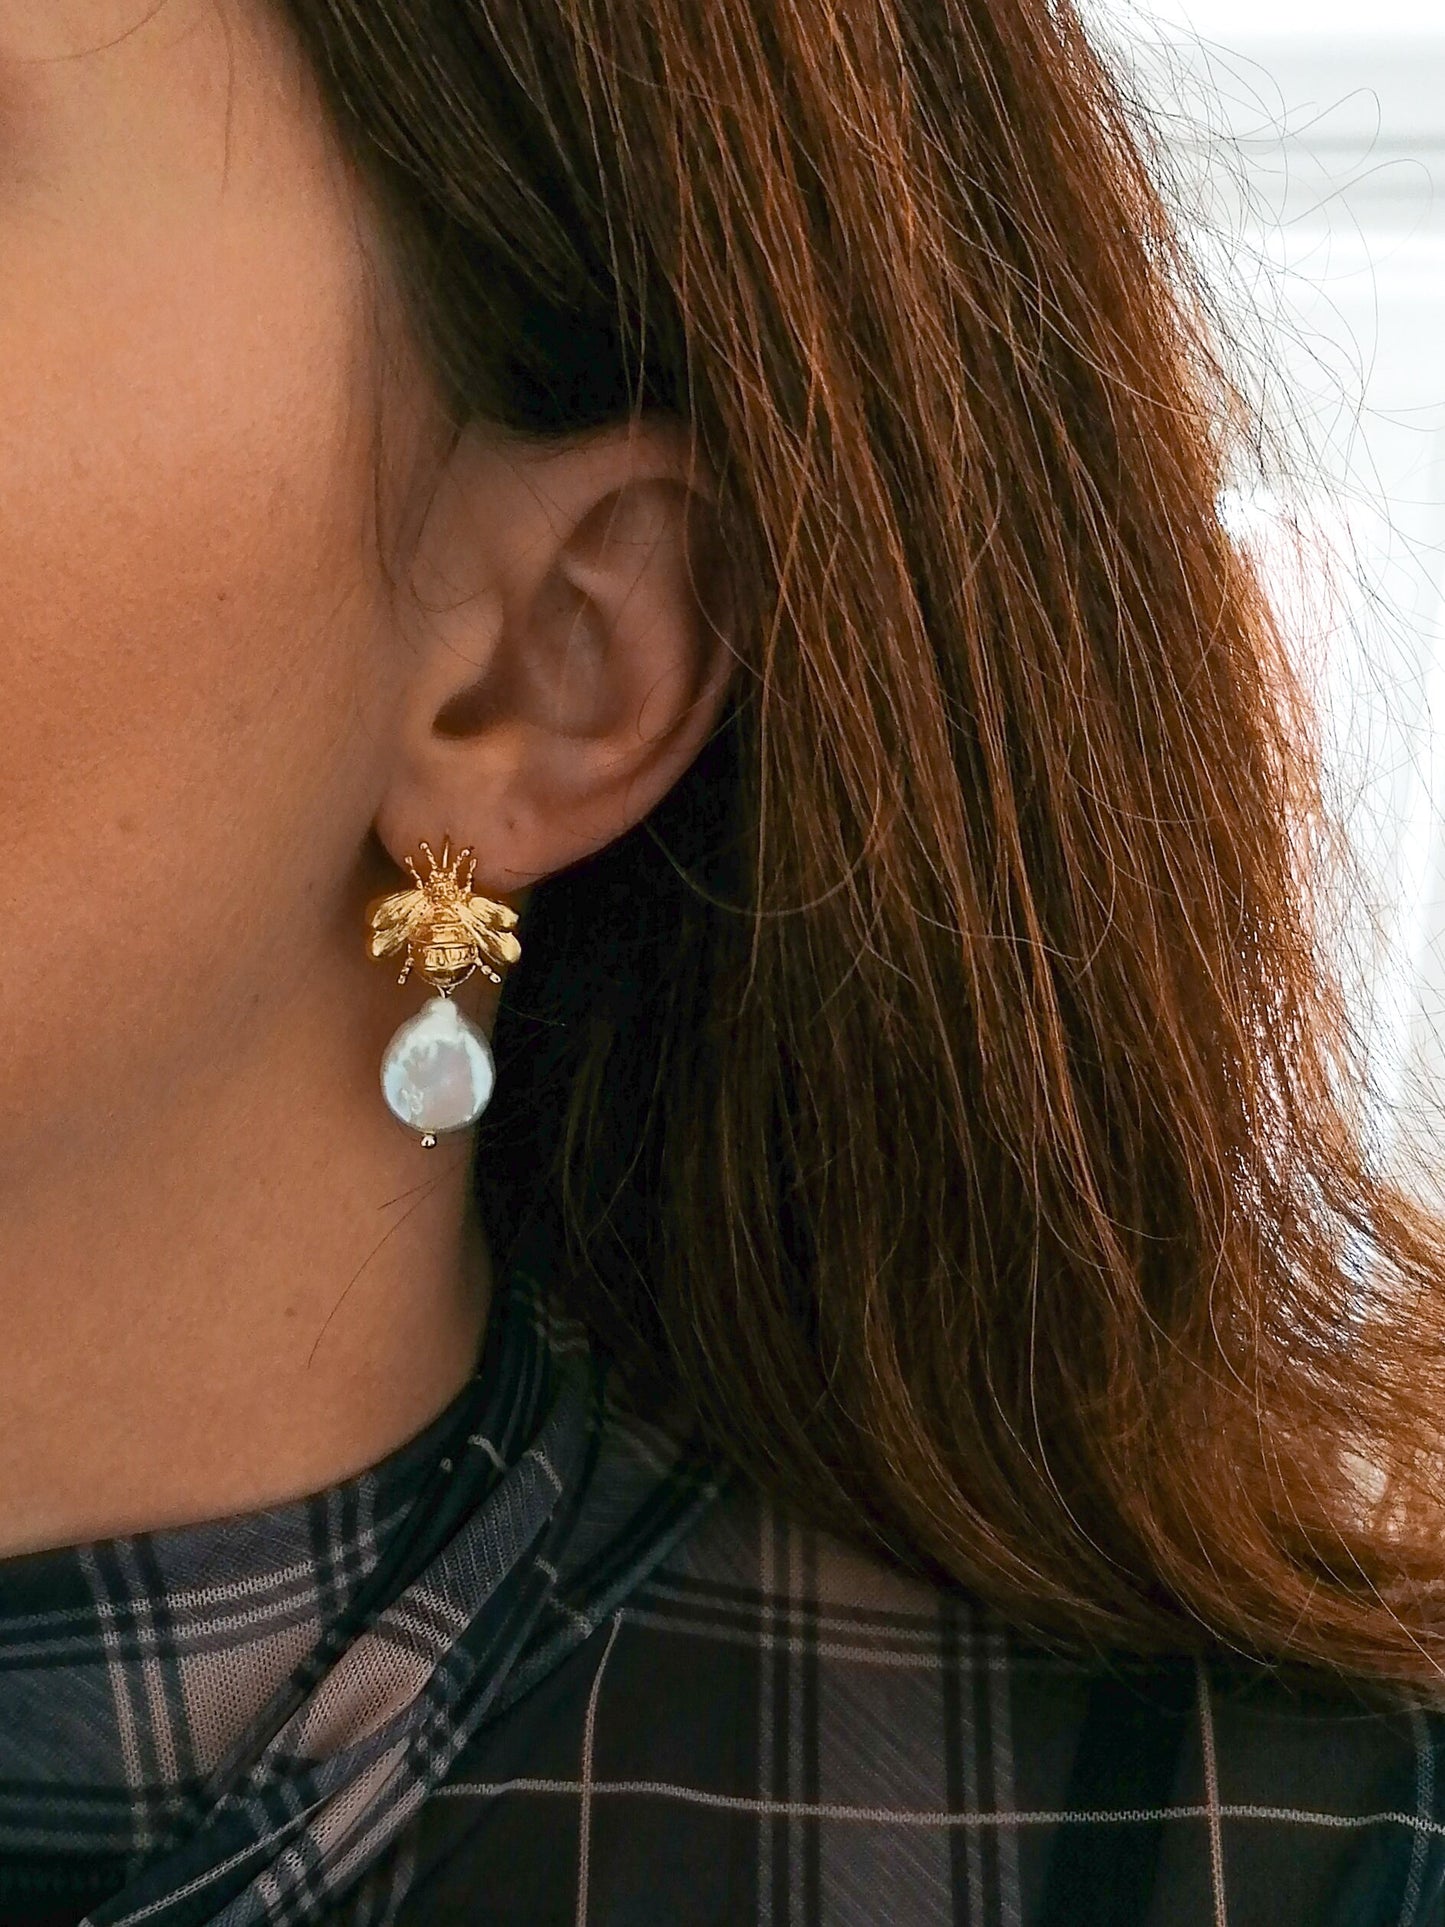 Bumblebee pearl earrings - silver